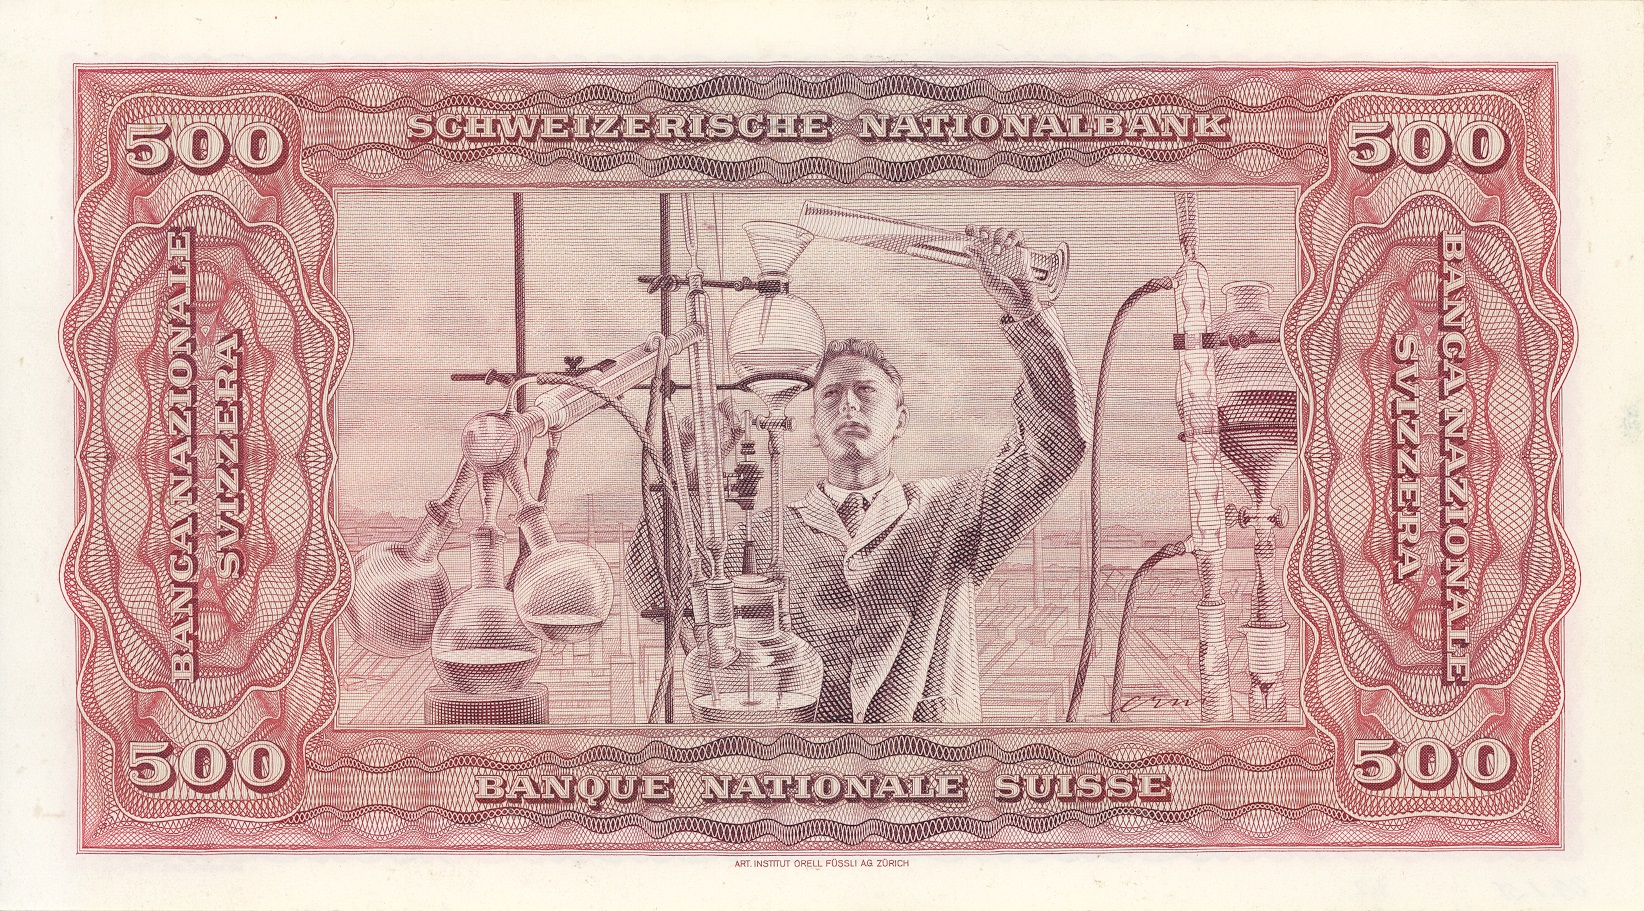 4ème série de billets 1938, Billet de 500 francs, verso